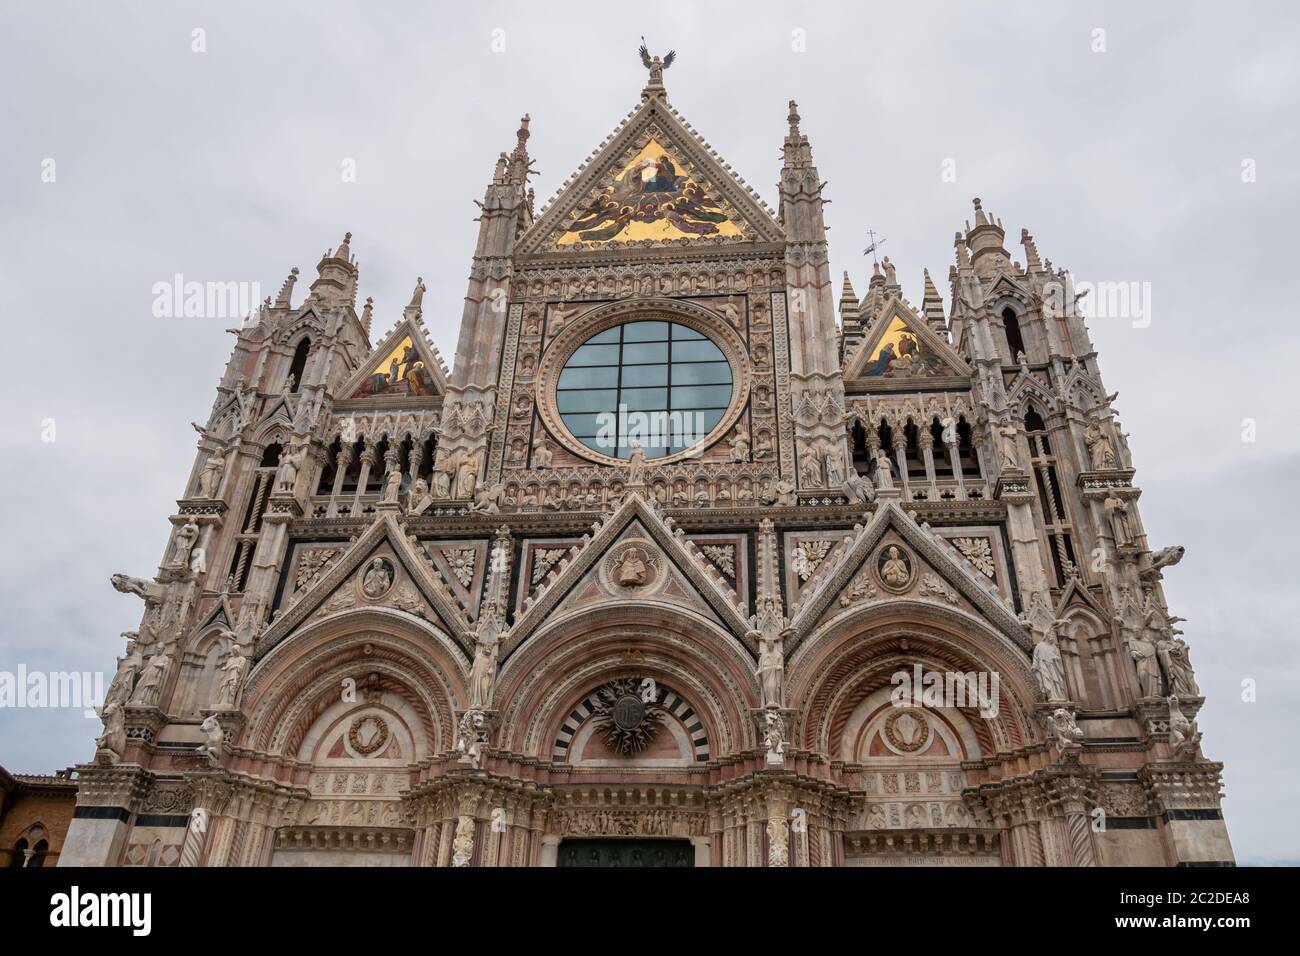 Blick auf die Kathedrale von Siena, Duomo di Siena, ist eine mittelalterliche Kirche, die heute der Himmelfahrt Mariens gewidmet ist, zwischen 1215 und 1263 fertiggestellt. Hochwertige Fotos Stockfoto